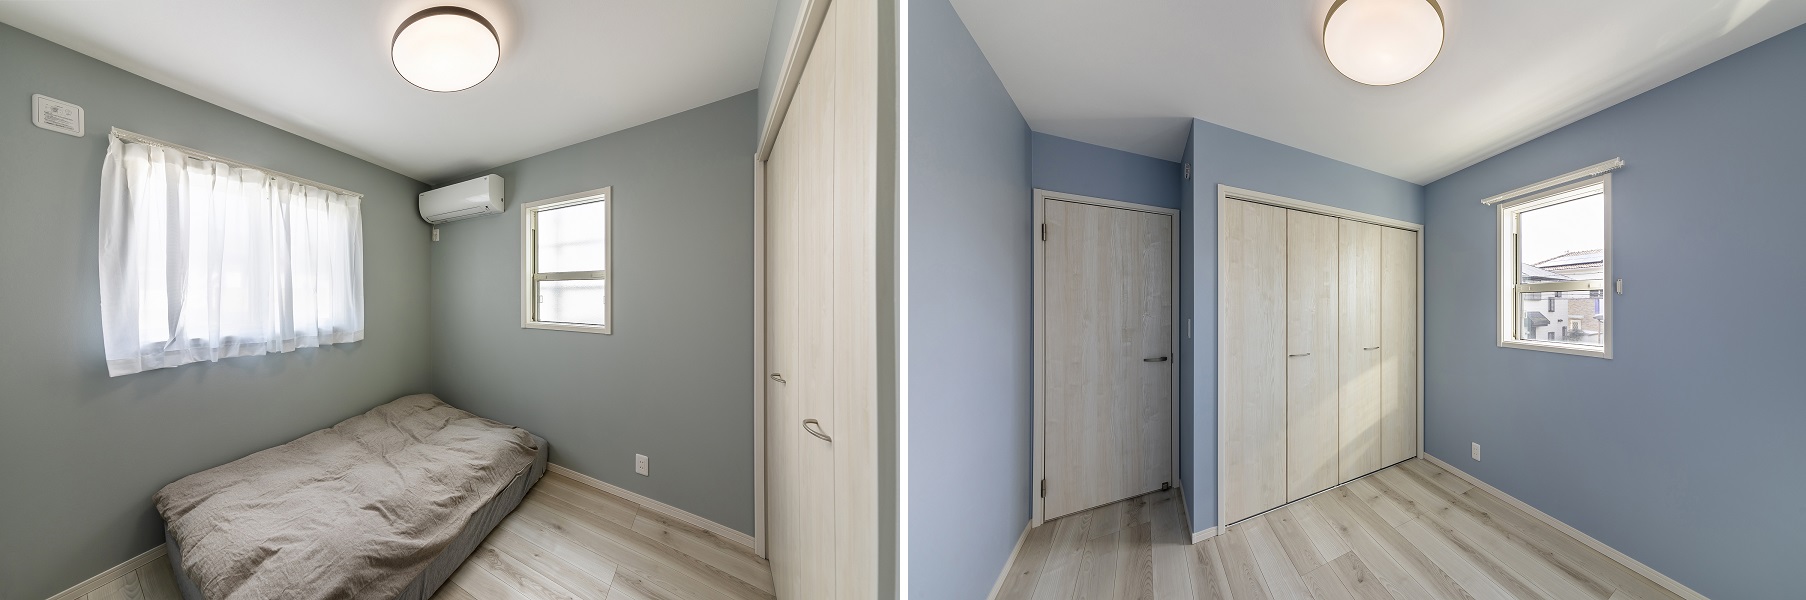 2部屋ある洋室のクロスはそれぞれグリーンとブルーの淡いくすみカラーを使用しています。<br />
シンプルでありながらオシャレさを感じられる空間になりました。